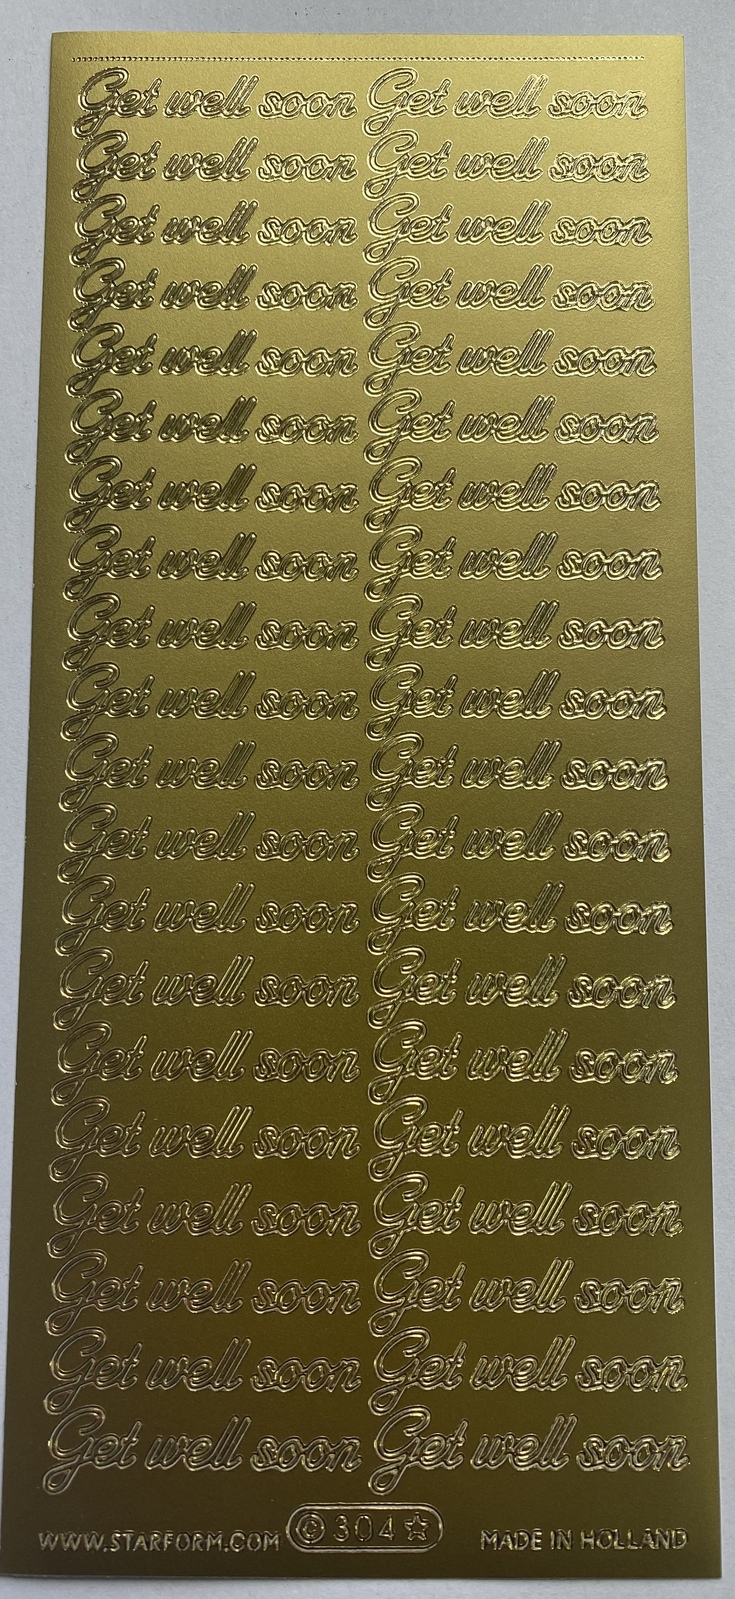 Starform Sticker Sheet 4 x 9 Inch Get Well Soon Gold